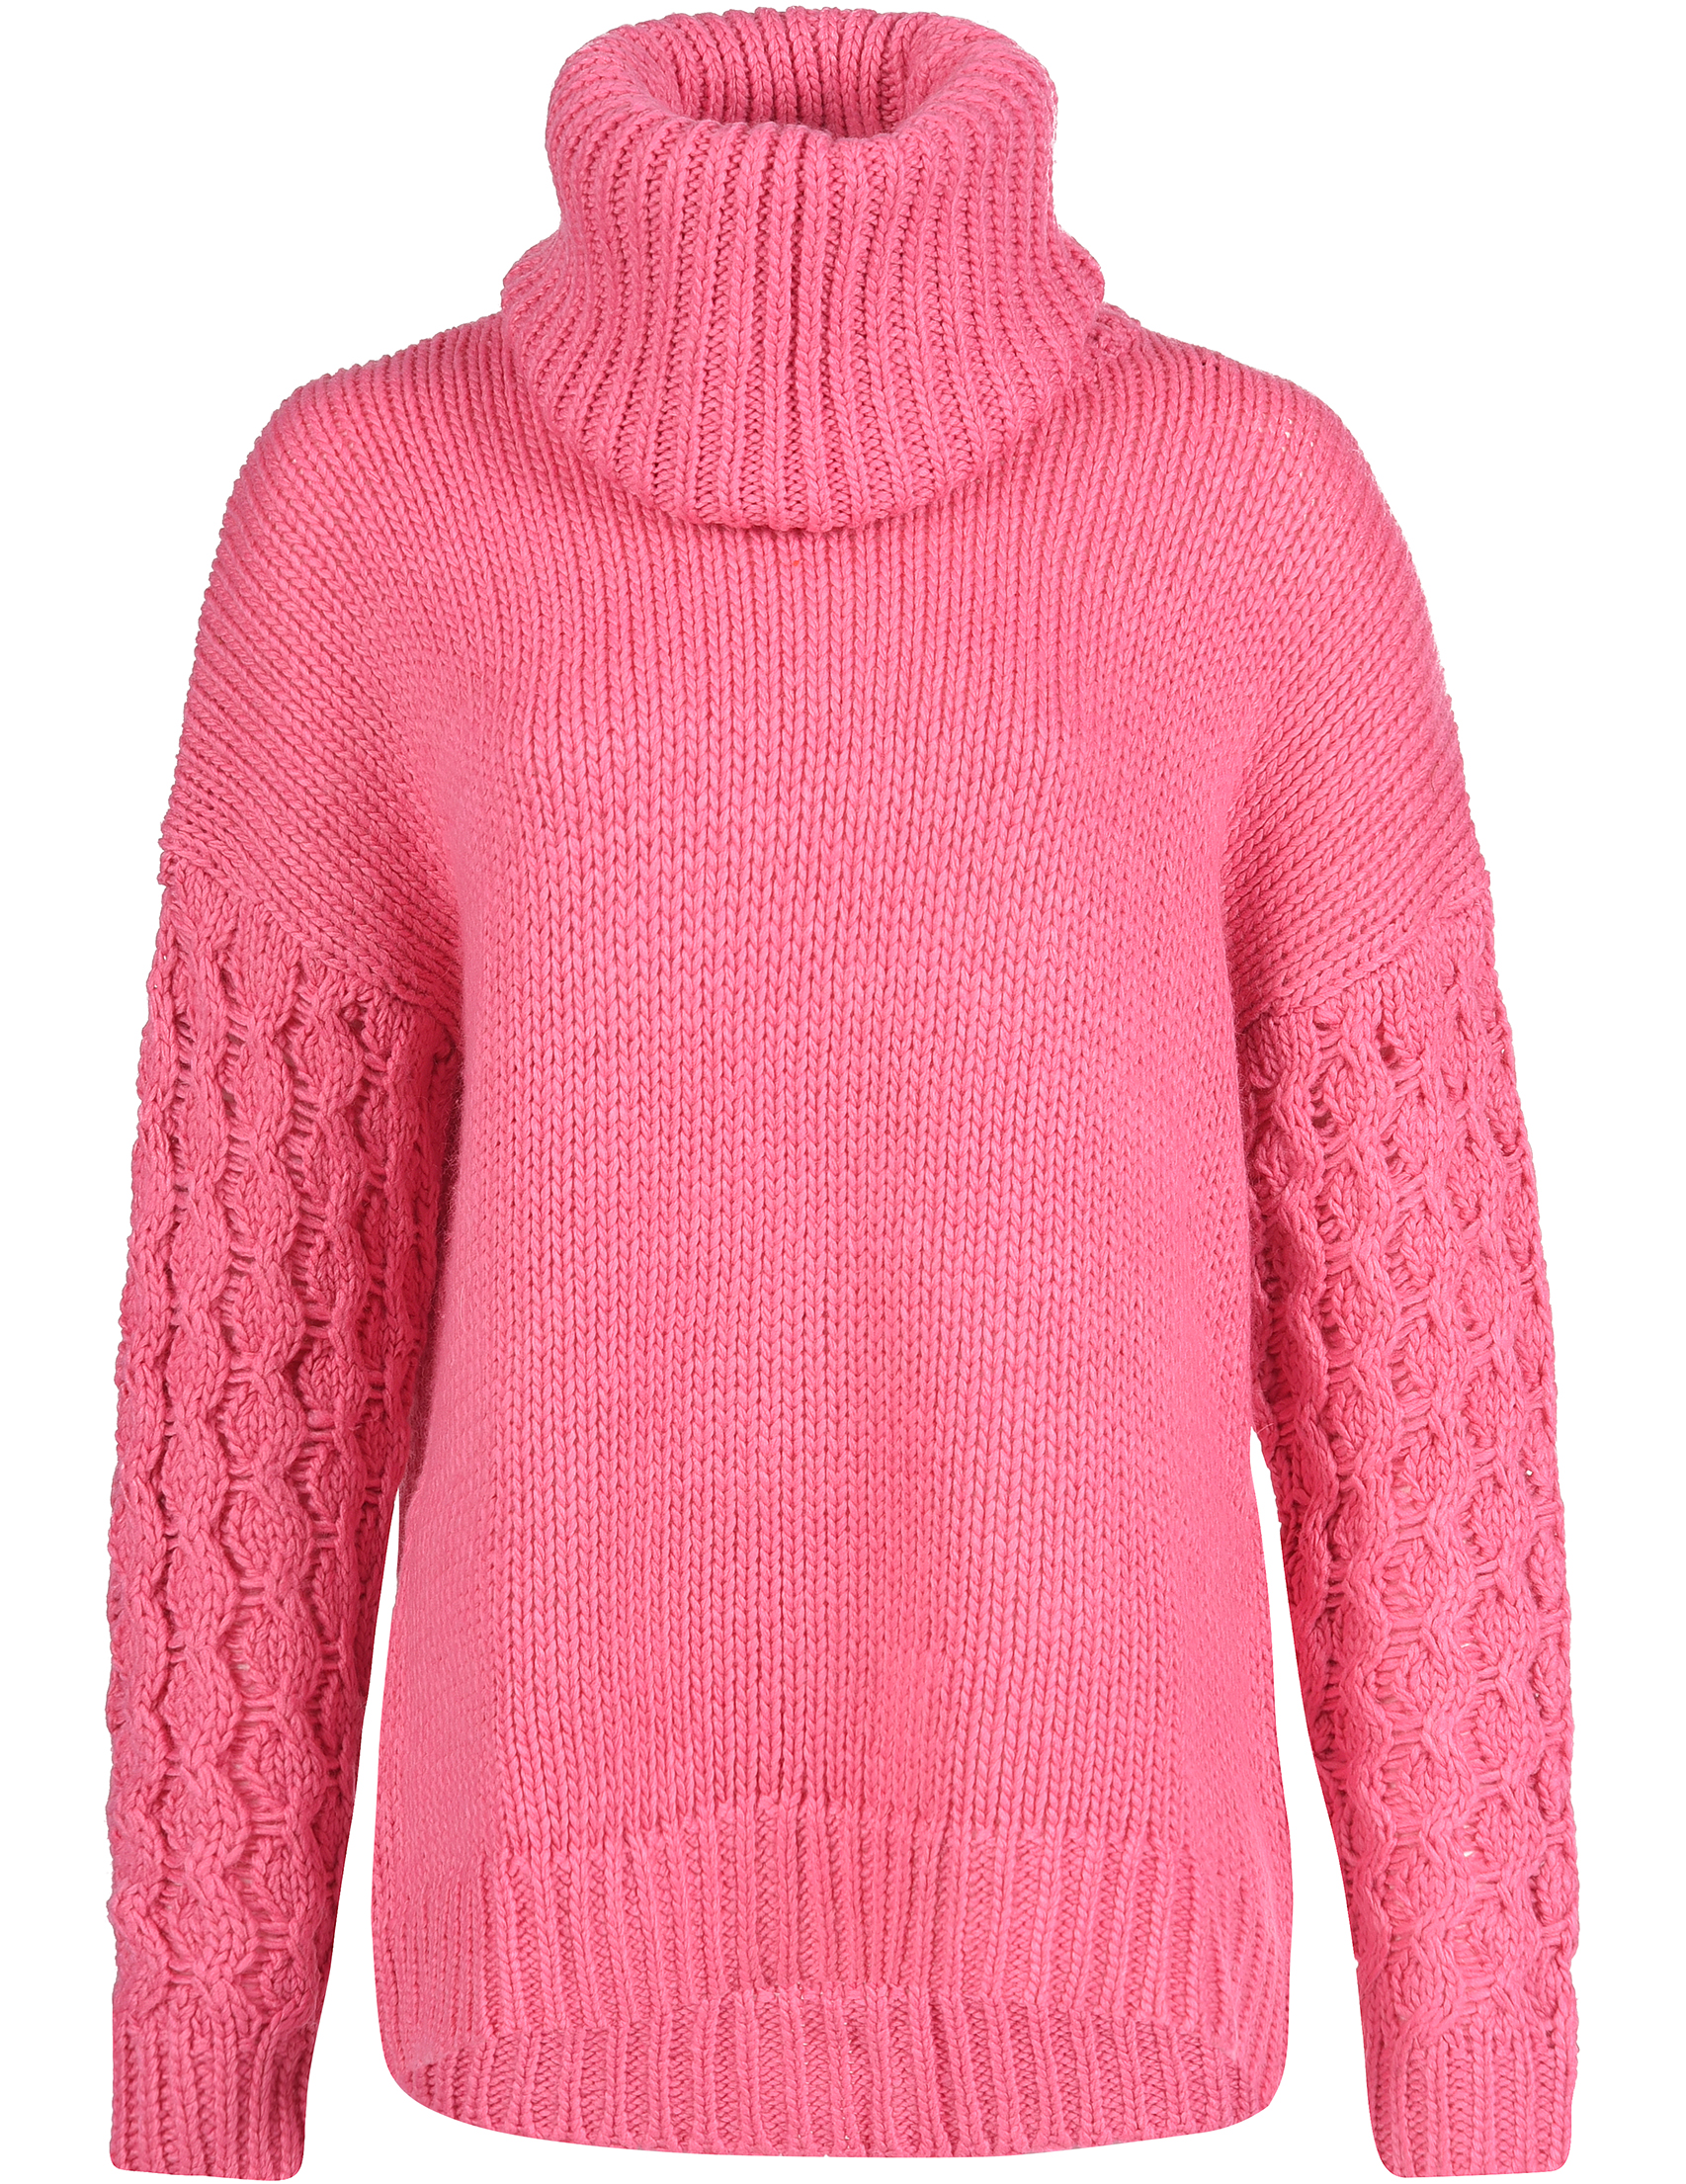 Где купить джемперы. Розовый свитер. Свитер женский. Розовый свитер с горлом женский. Розовый джемпер женский.